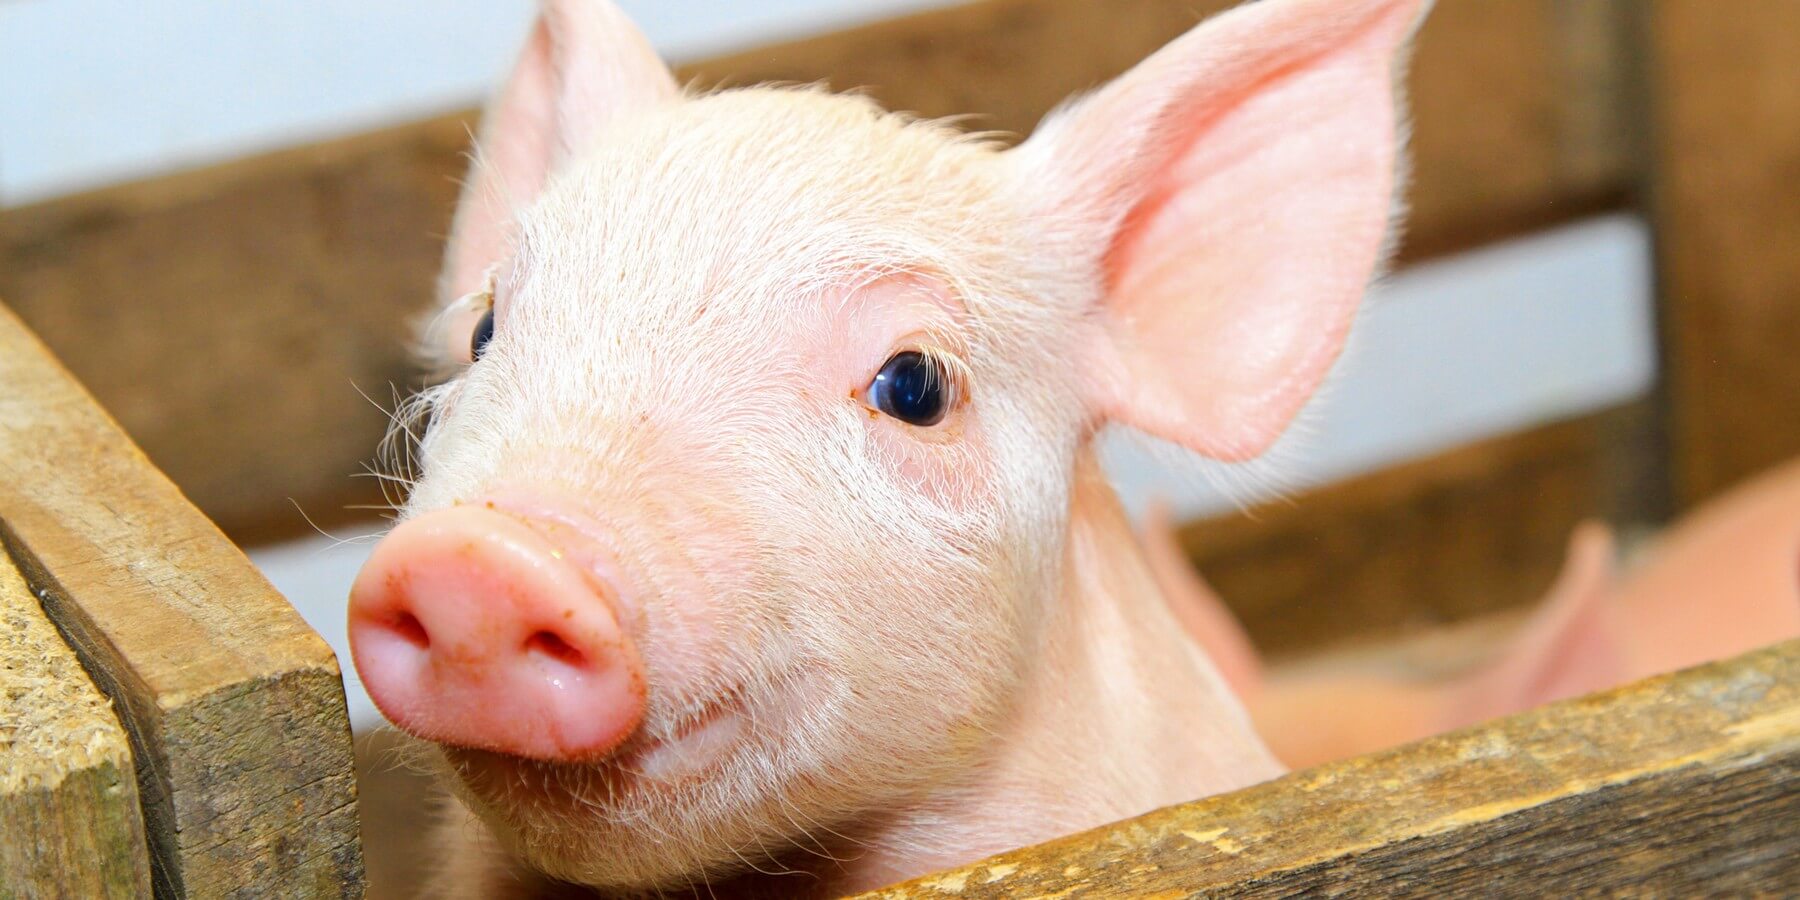 Что представляет собой аналог почки внутри свиного эмбриона? В 2019 году китайские ученые сообщили, что вывели породу свиней, чьи органы можно было бы без опаски пересаживать человеку. Фото.